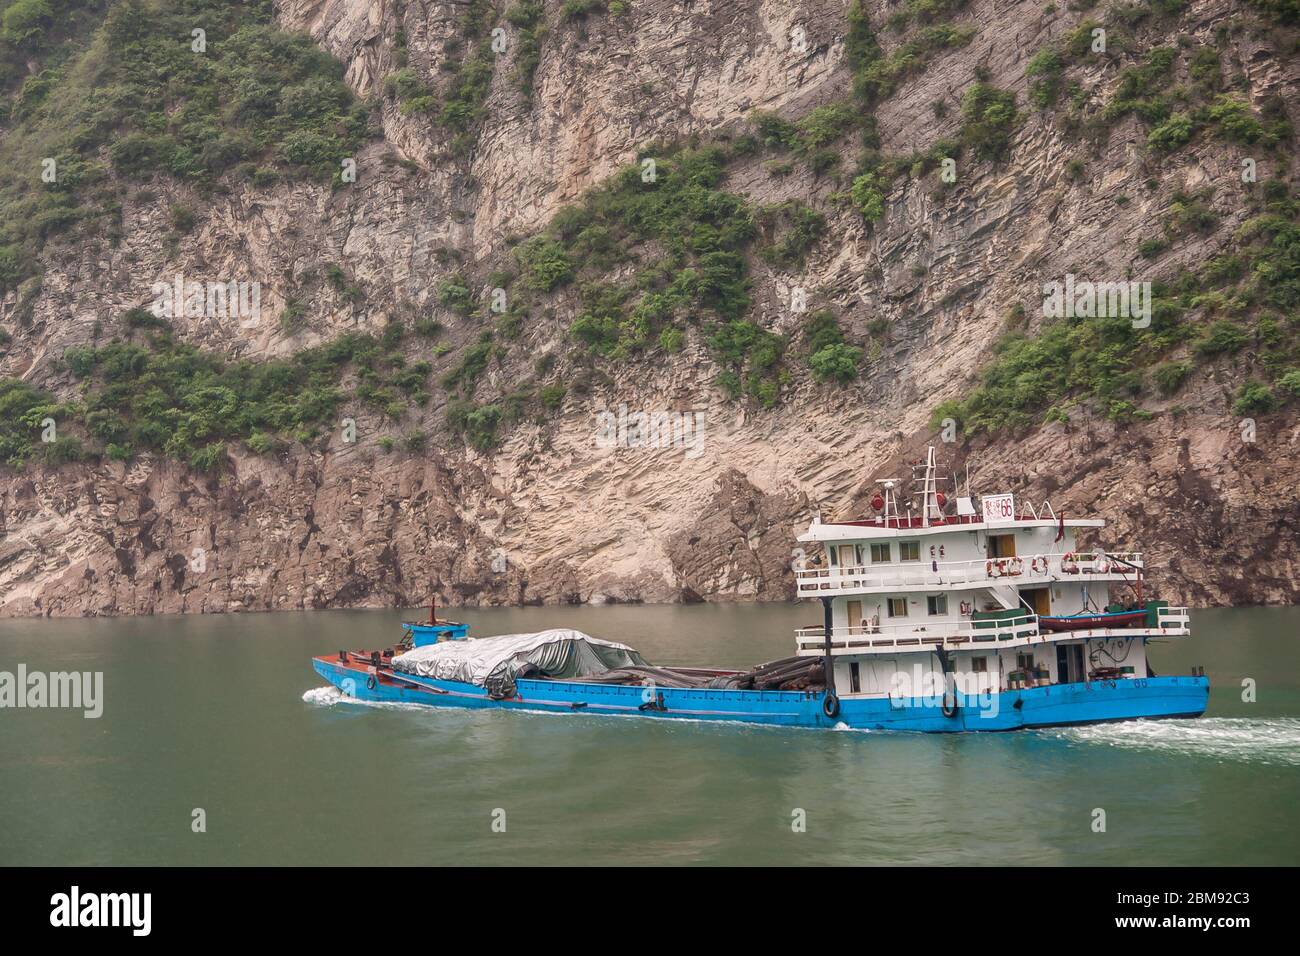 Xiangxicun, Chine - 6 mai 2010 : gorge de Xiling sur le fleuve Yangtze. Profond dans l'eau verte voile bleu et blanc barge couvrant partiellement sa charge avec des bâches. Banque D'Images